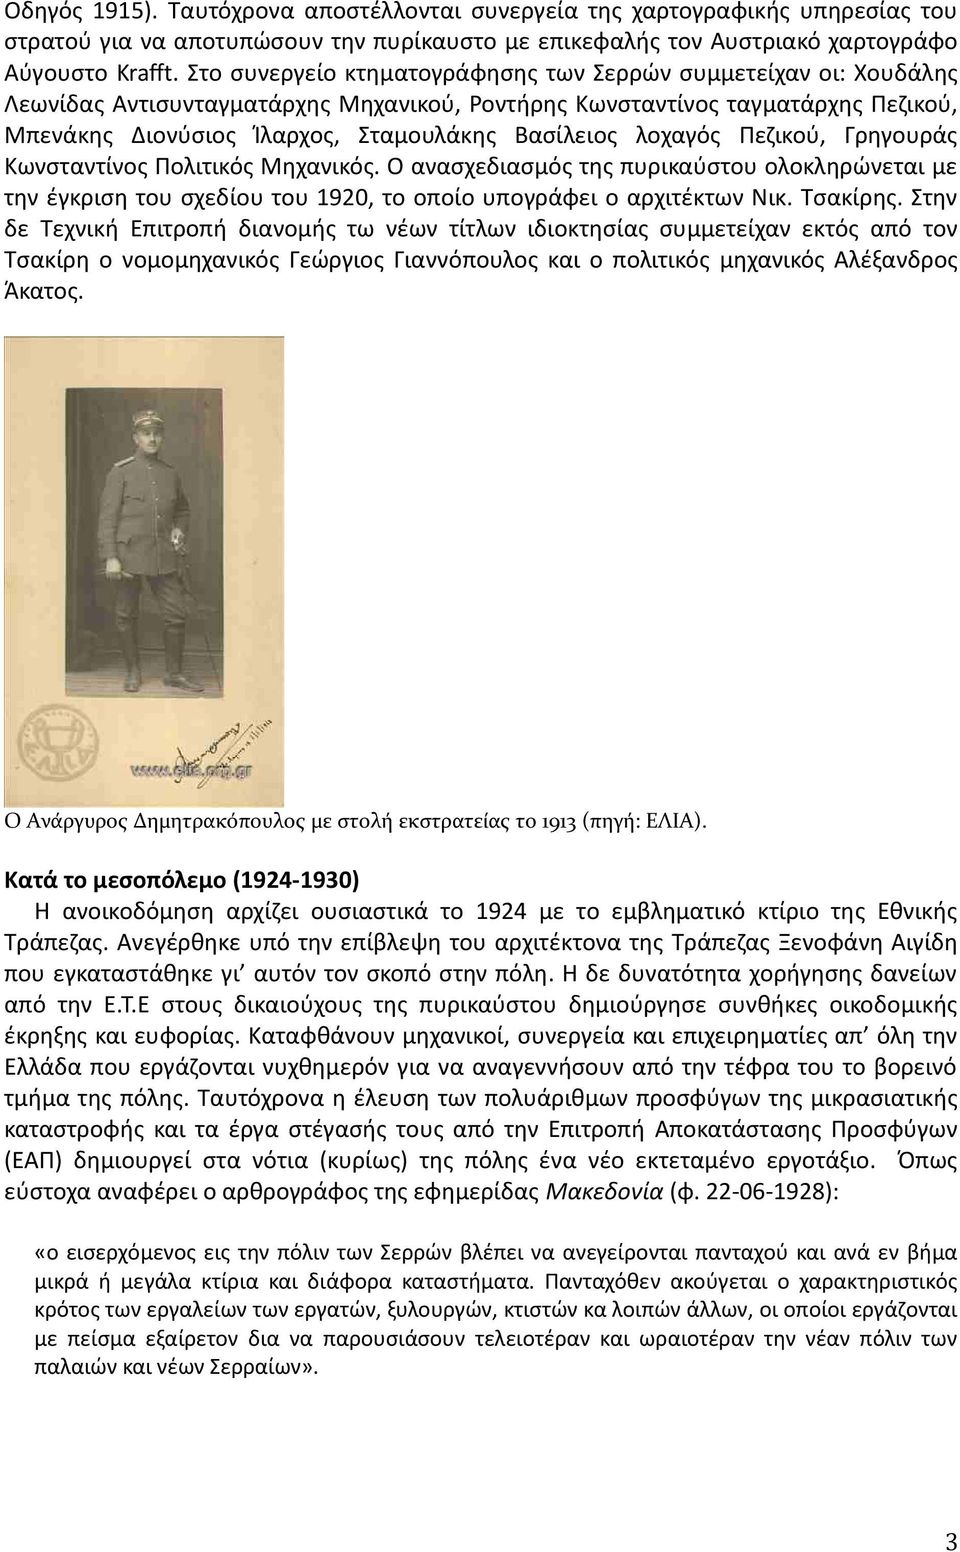 λοχαγός Πεζικού, Γρηγουράς Κωνσταντίνος Πολιτικός Μηχανικός. Ο ανασχεδιασμός της πυρικαύστου ολοκληρώνεται με την έγκριση του σχεδίου του 1920, το οποίο υπογράφει ο αρχιτέκτων Νικ. Τσακίρης.